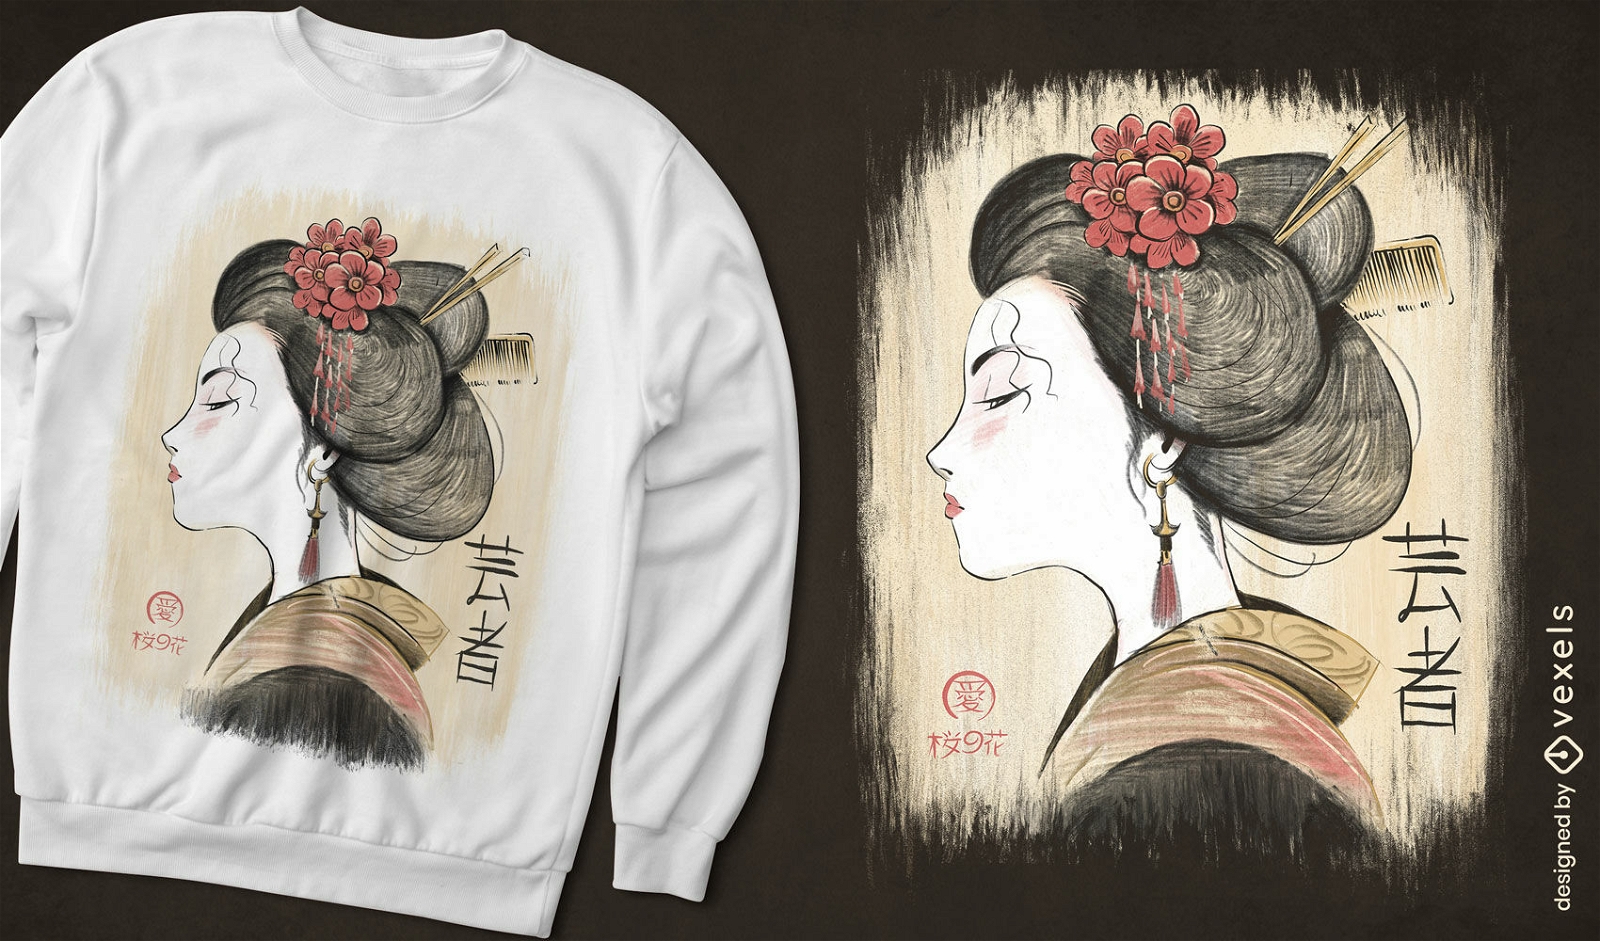 Vintage Japanese geisha t-shirt design